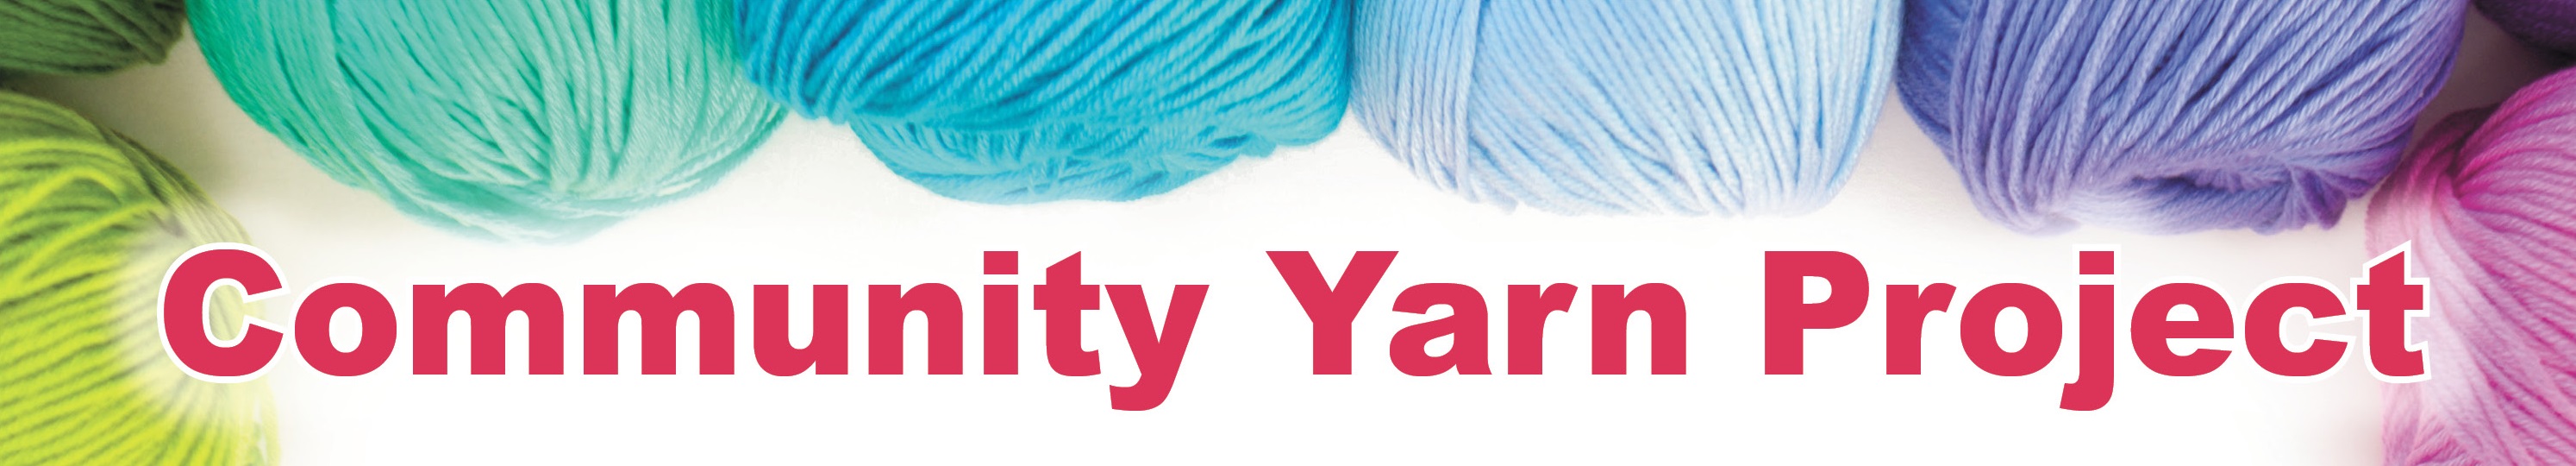 Community Yarn Project Logo